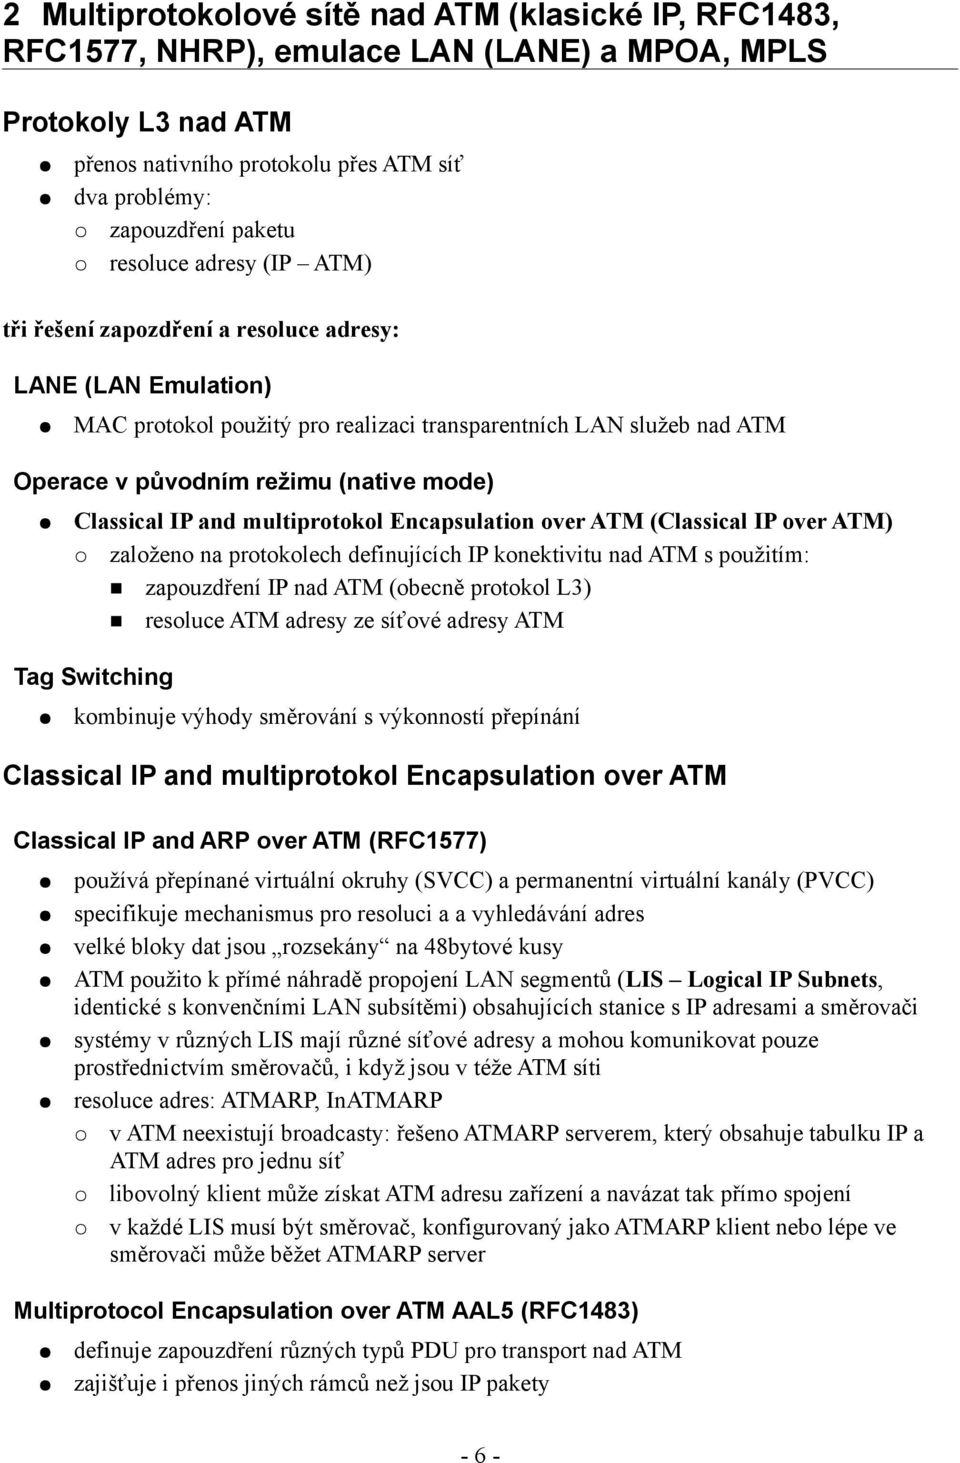 Classical IP and multiprotokol Encapsulation over ATM (Classical IP over ATM) založeno na protokolech definujících IP konektivitu nad ATM s použitím: zapouzdření IP nad ATM (obecně protokol L3)